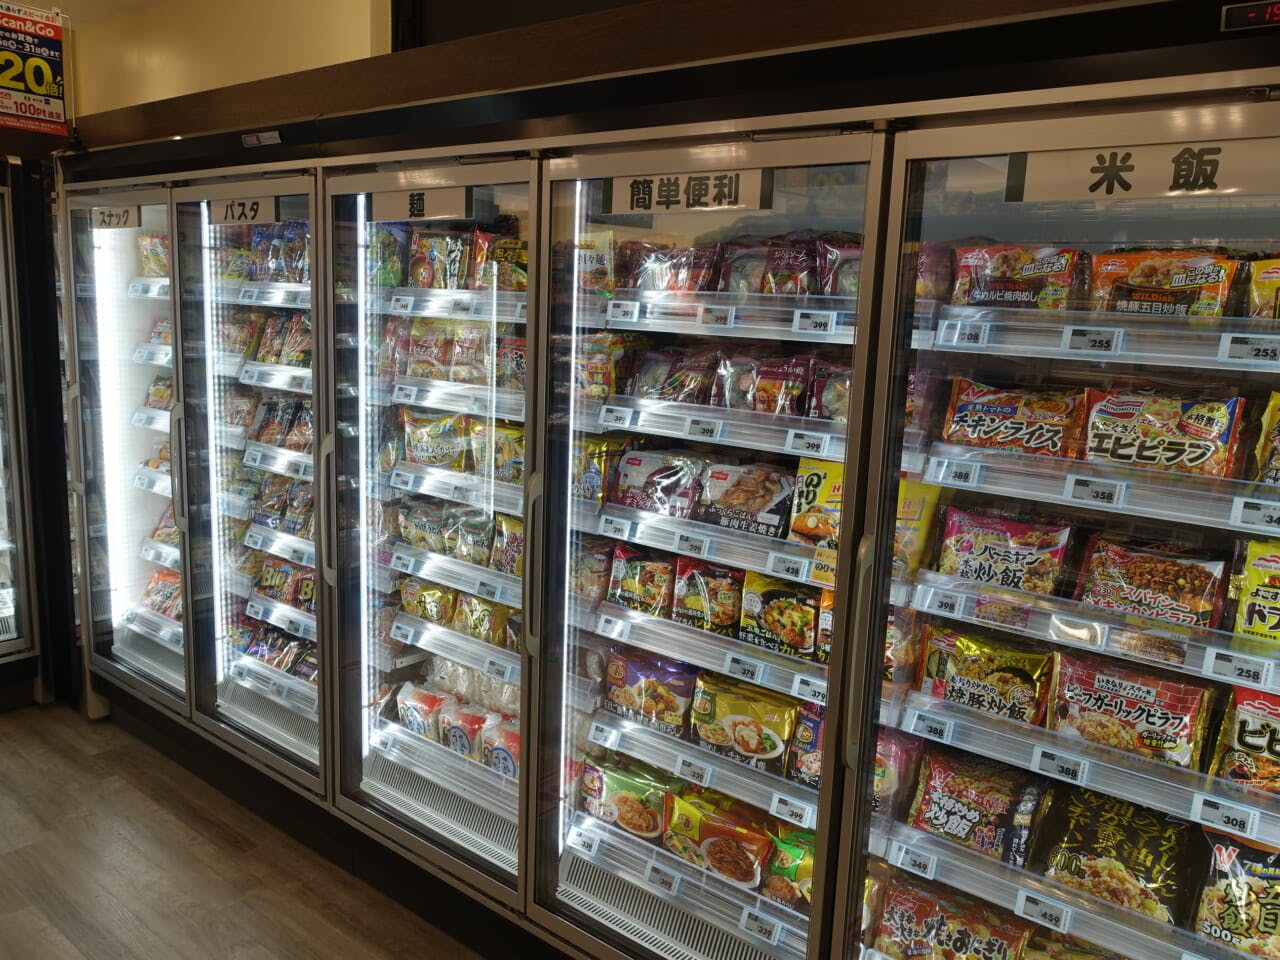 主食商品を多く販売する冷凍食品売場